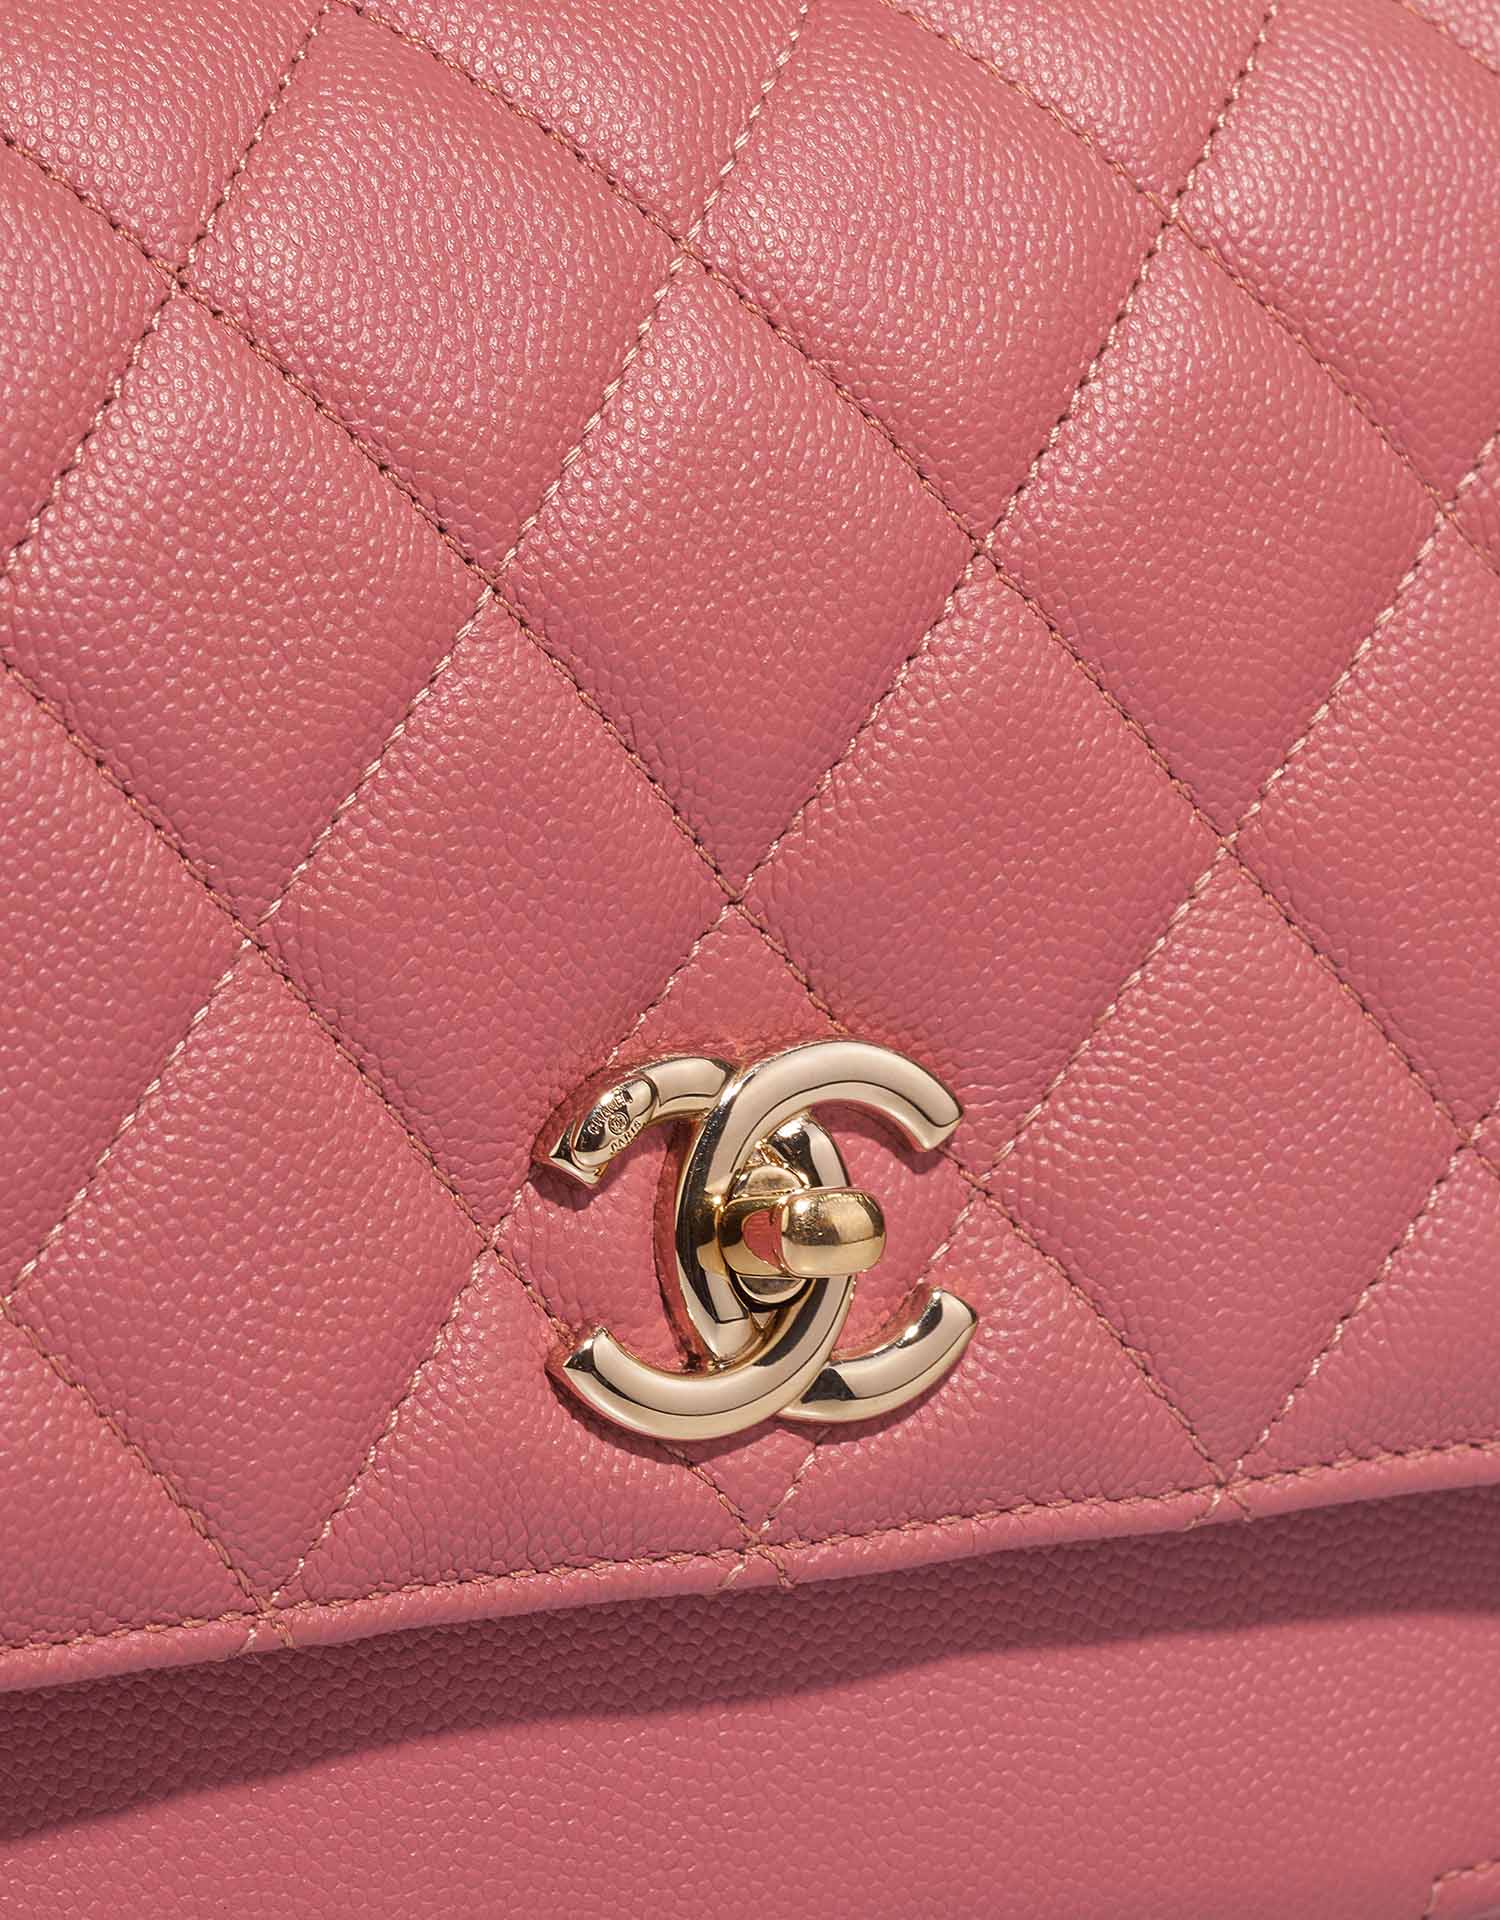 Chanel Business Affinity Medium Coral Pink Verschluss-System 1 | Verkaufen Sie Ihre Designer-Tasche auf Saclab.com